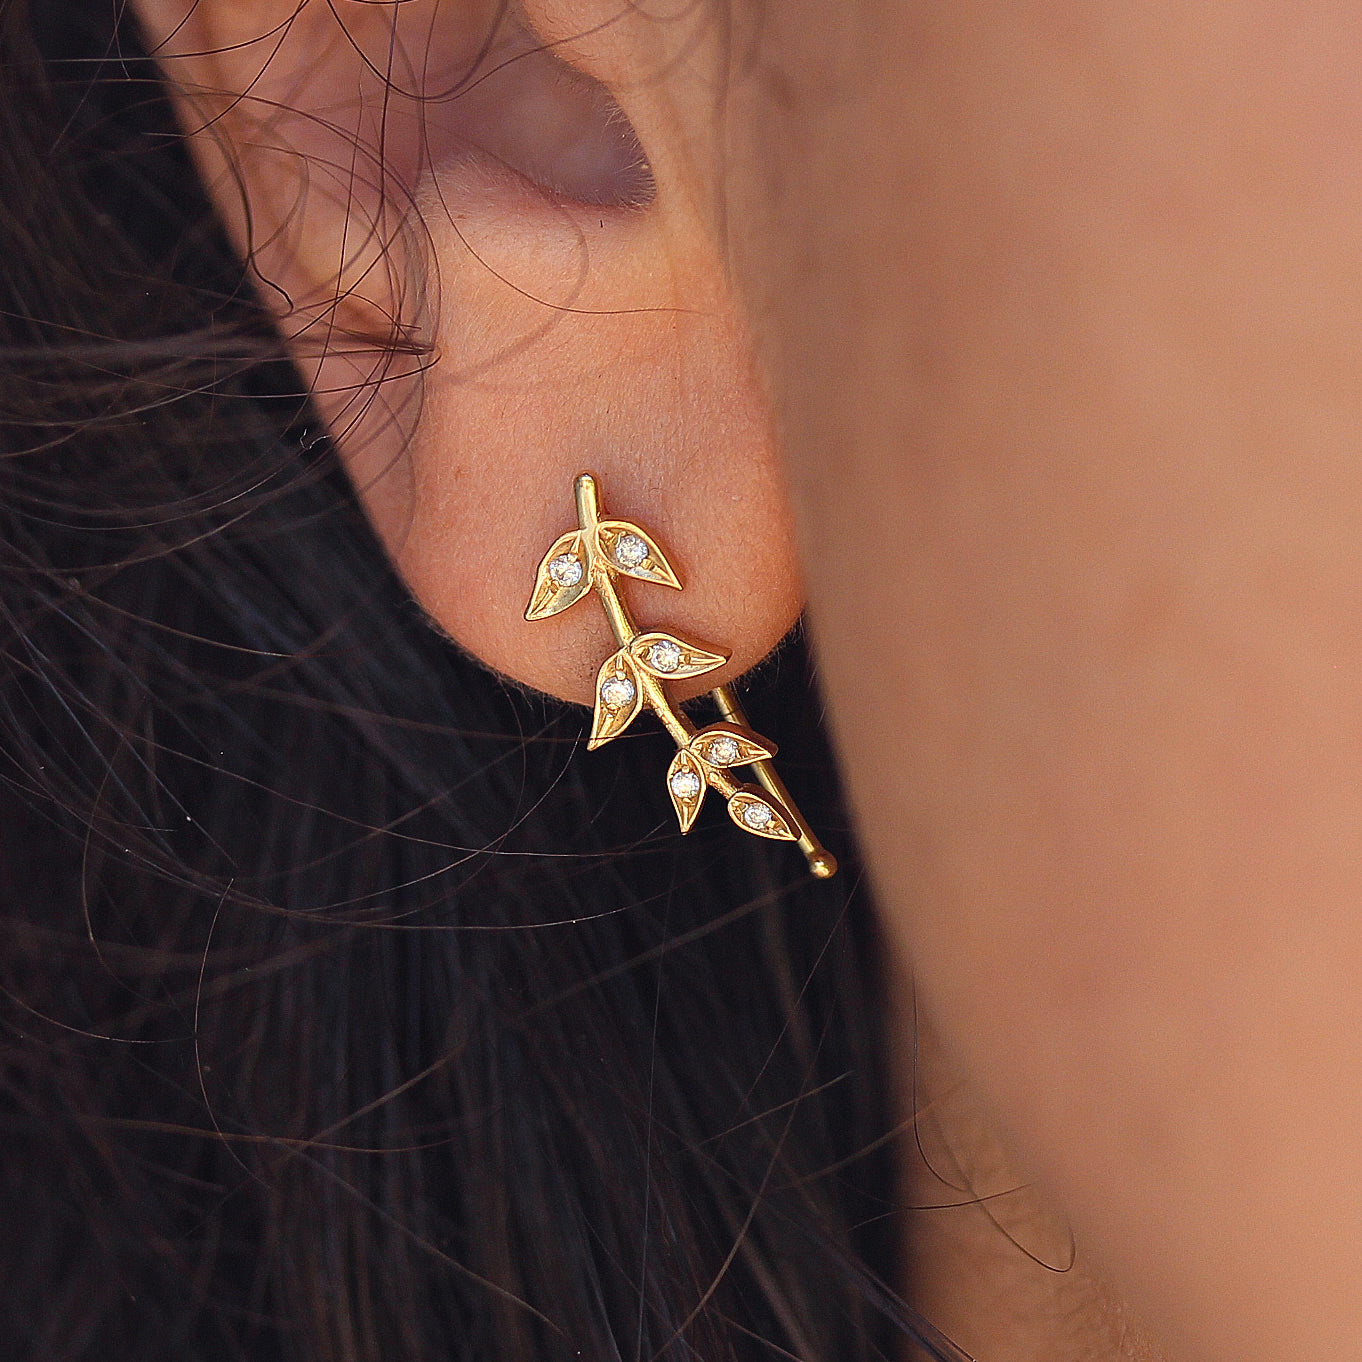 Olive Branch Leaves gold & Diamonds wedding earrings , greek Earrings - sillyshinydiamonds